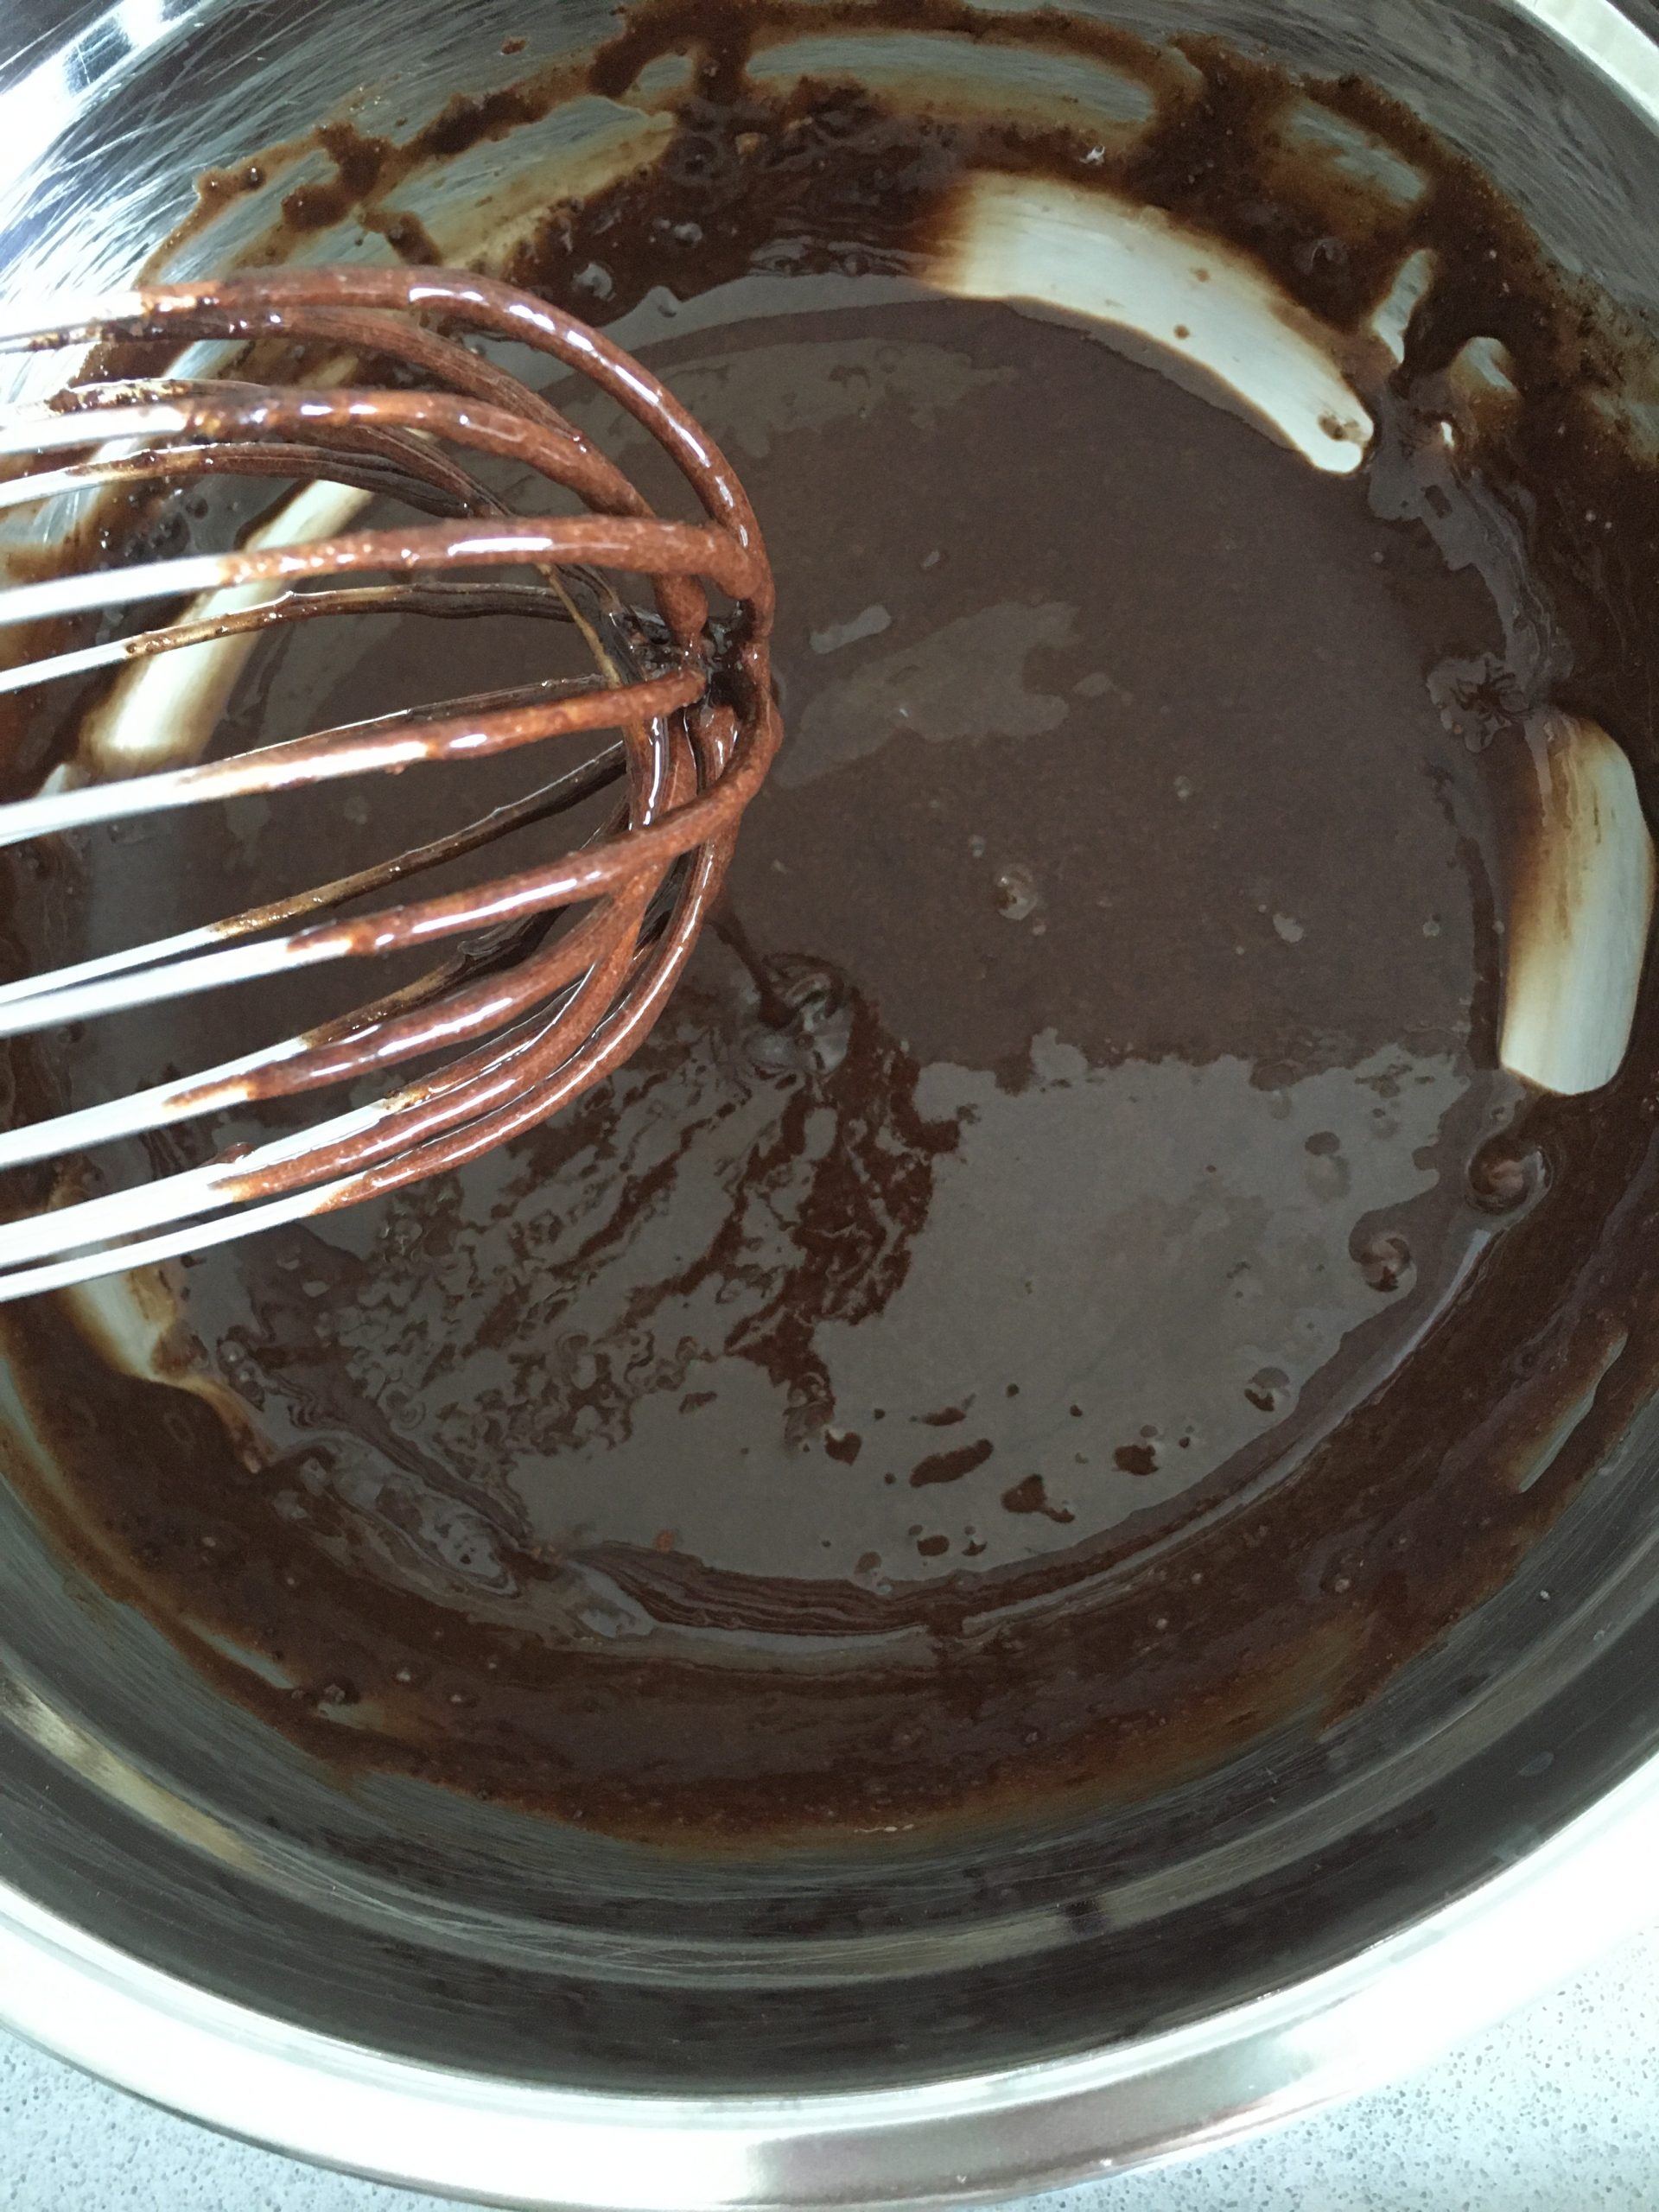 עוגת שכבות עם קרם שנטילי שוקולד ללא גלוטן | צילום: ספיר דהן